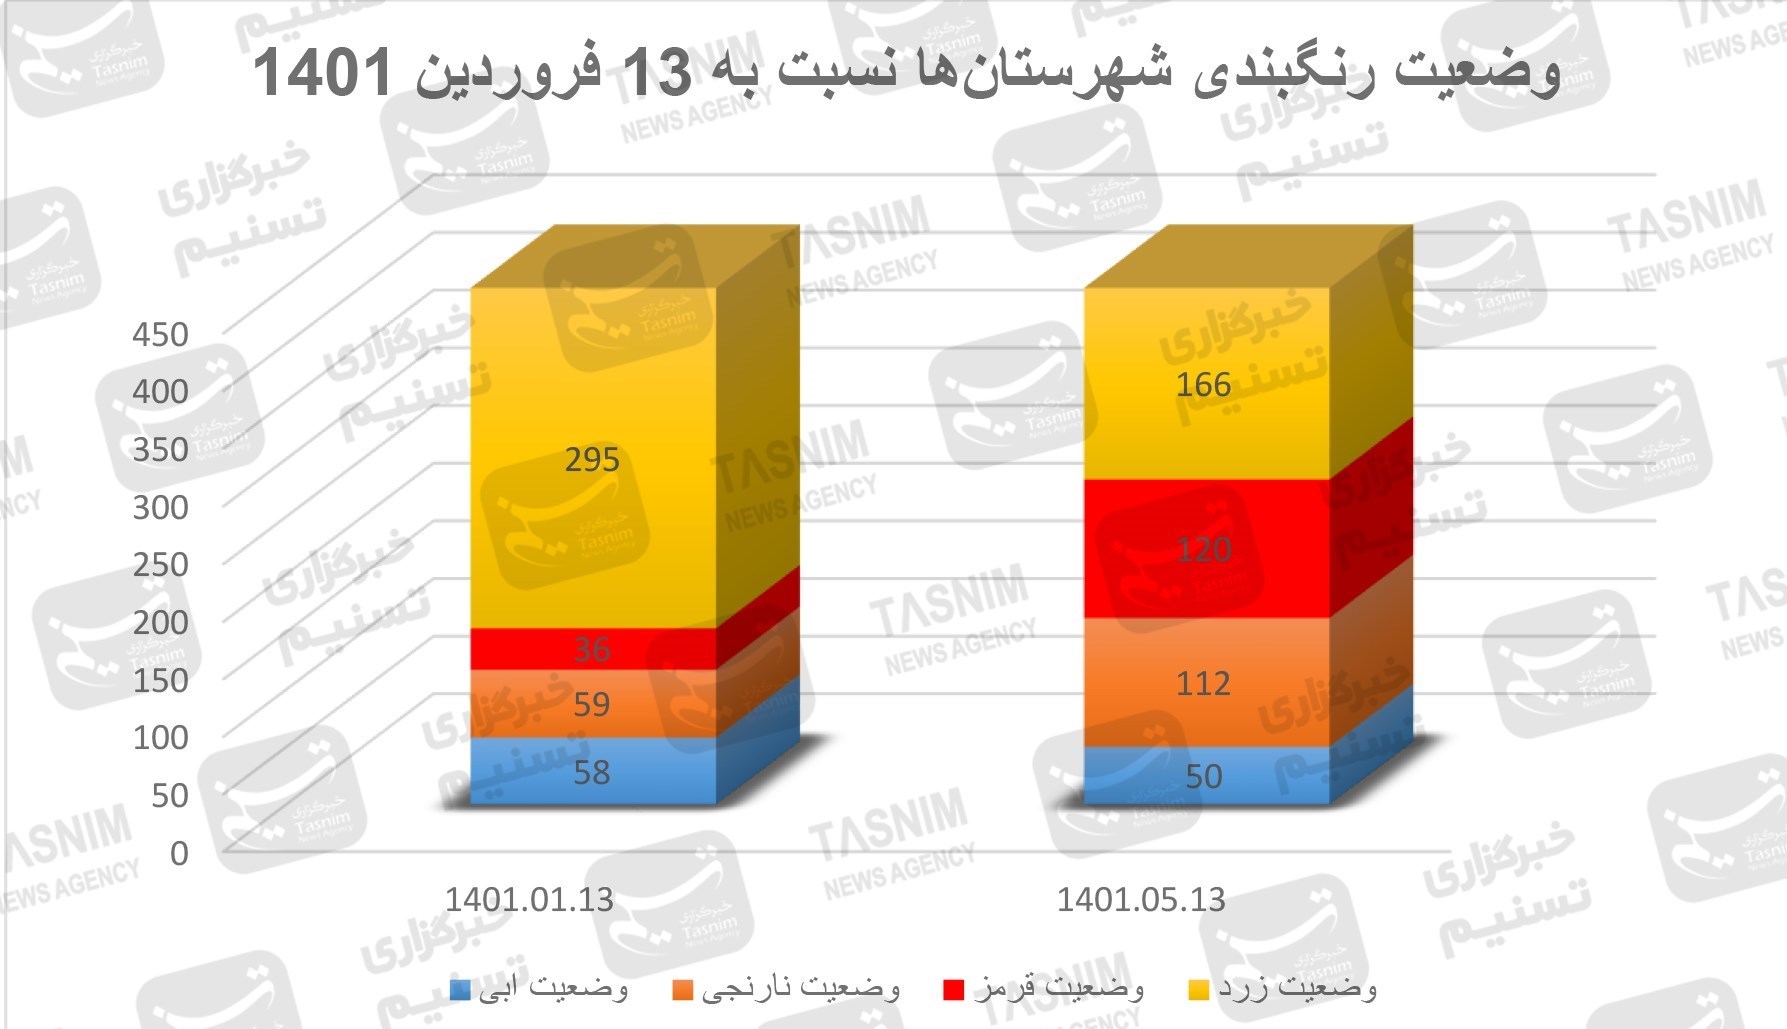 آخرین اخبار کرونا در ایران| رشد ۲۹۲.۹۵درصدی نرخ ابتلا از ۱۳ فروردین در پیک هفتم/ کودکان ناقلان شیرین‌زبان+ نقشه و نمودار